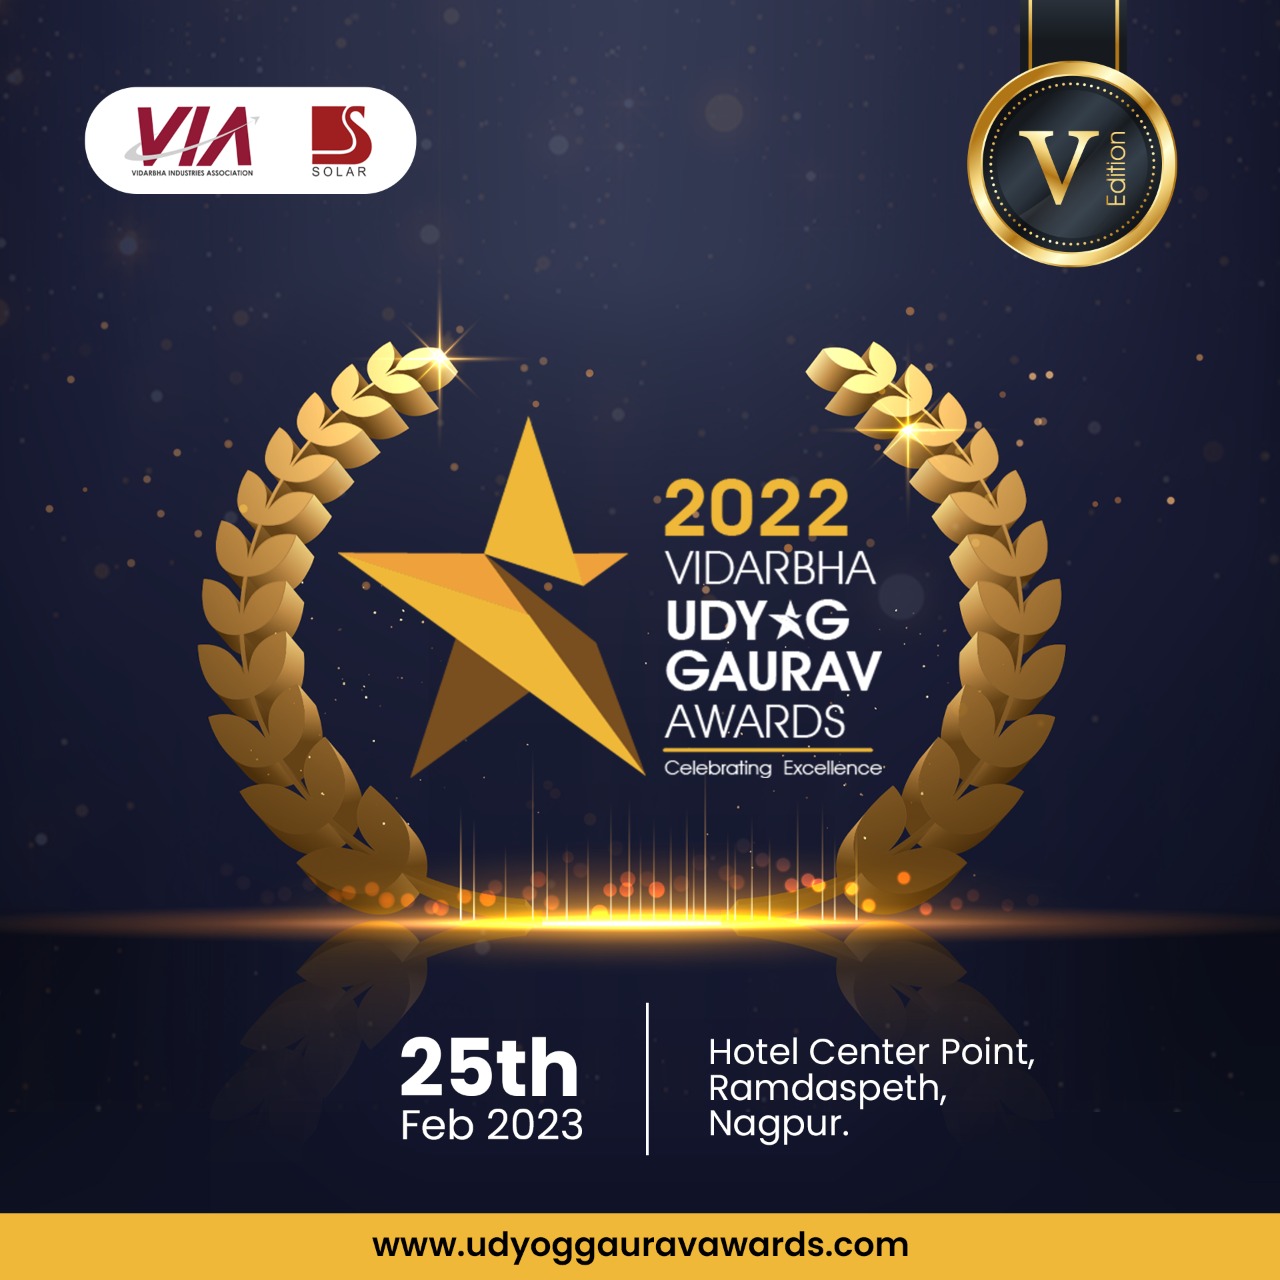 VIA & Solar Vidarbha Udyog Gaurav Awards 2022, Nagpur, Maharashtra, India